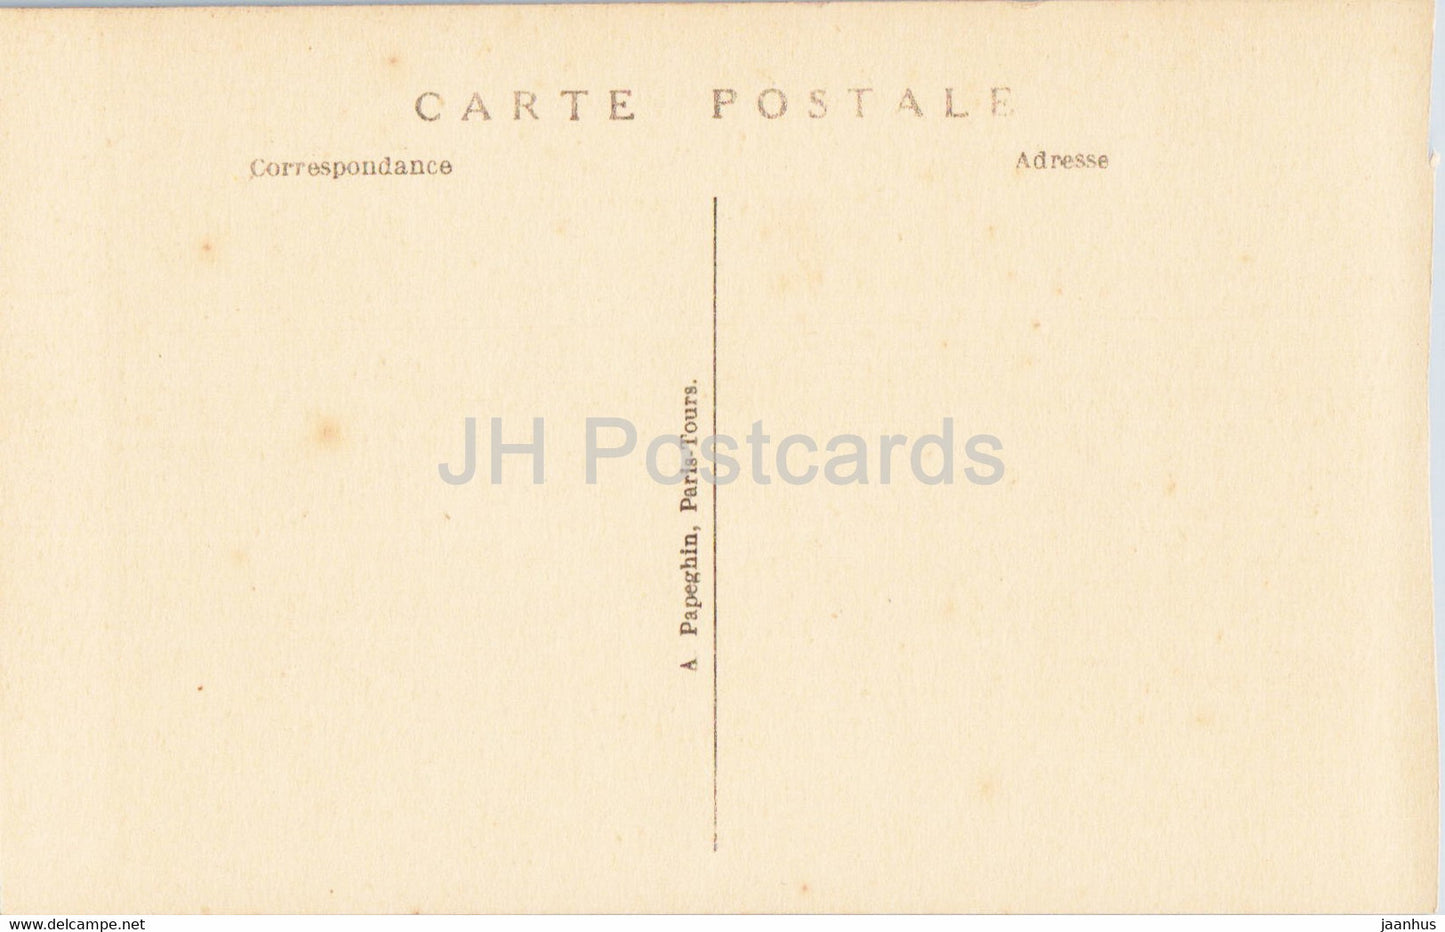 Versailles - Petit Trianon - Le Pavillon de la Musique - 78 - old postcard - France - unused